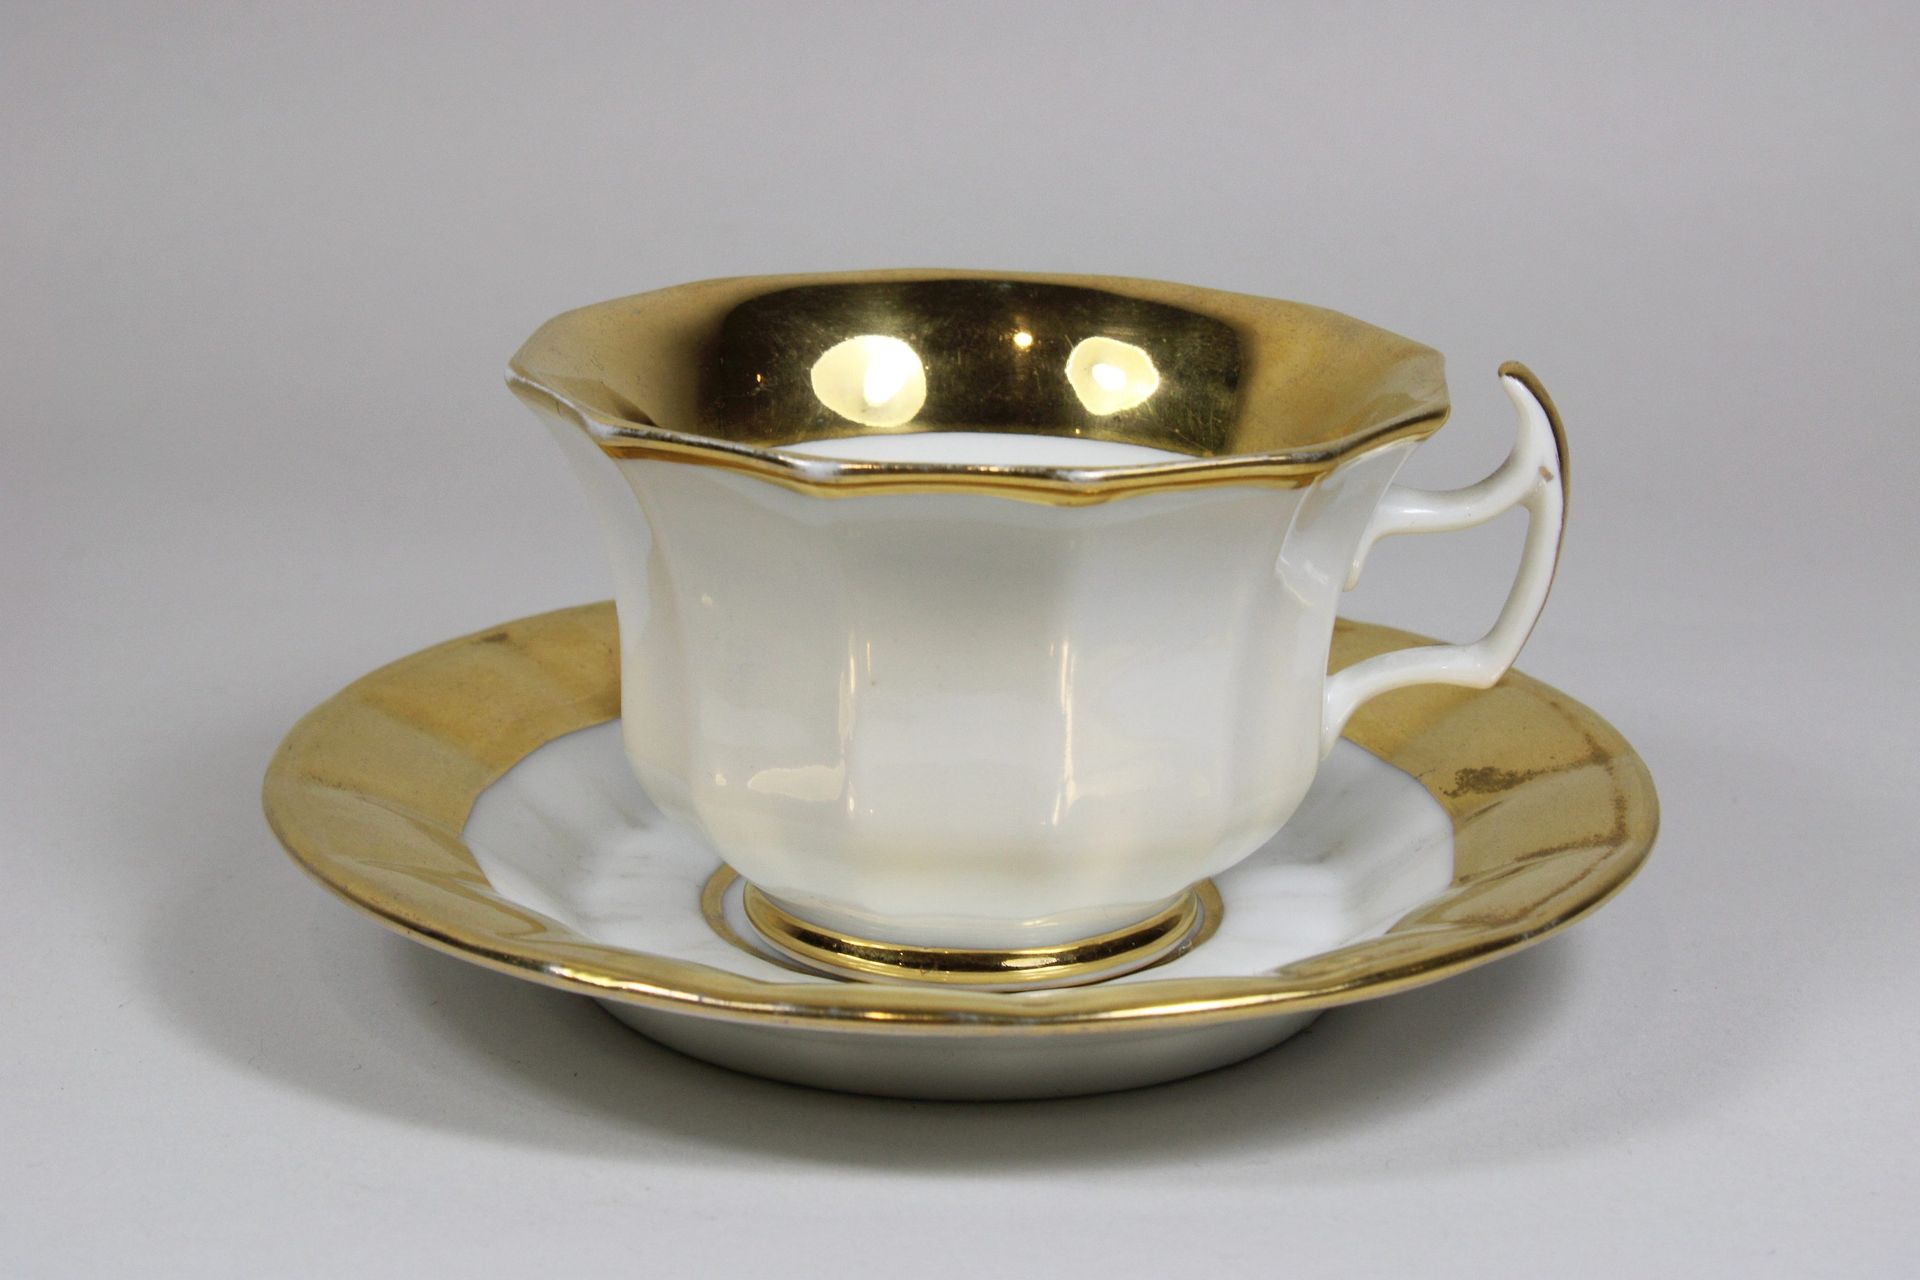 Sammeltasse m. Untertasse 收藏家的杯子和碟子，KPM，瓷器，第一选择，杯子底部有标记，12刃，尖柄，凹槽底，金色装饰。Dm.盘子：13&hellip;